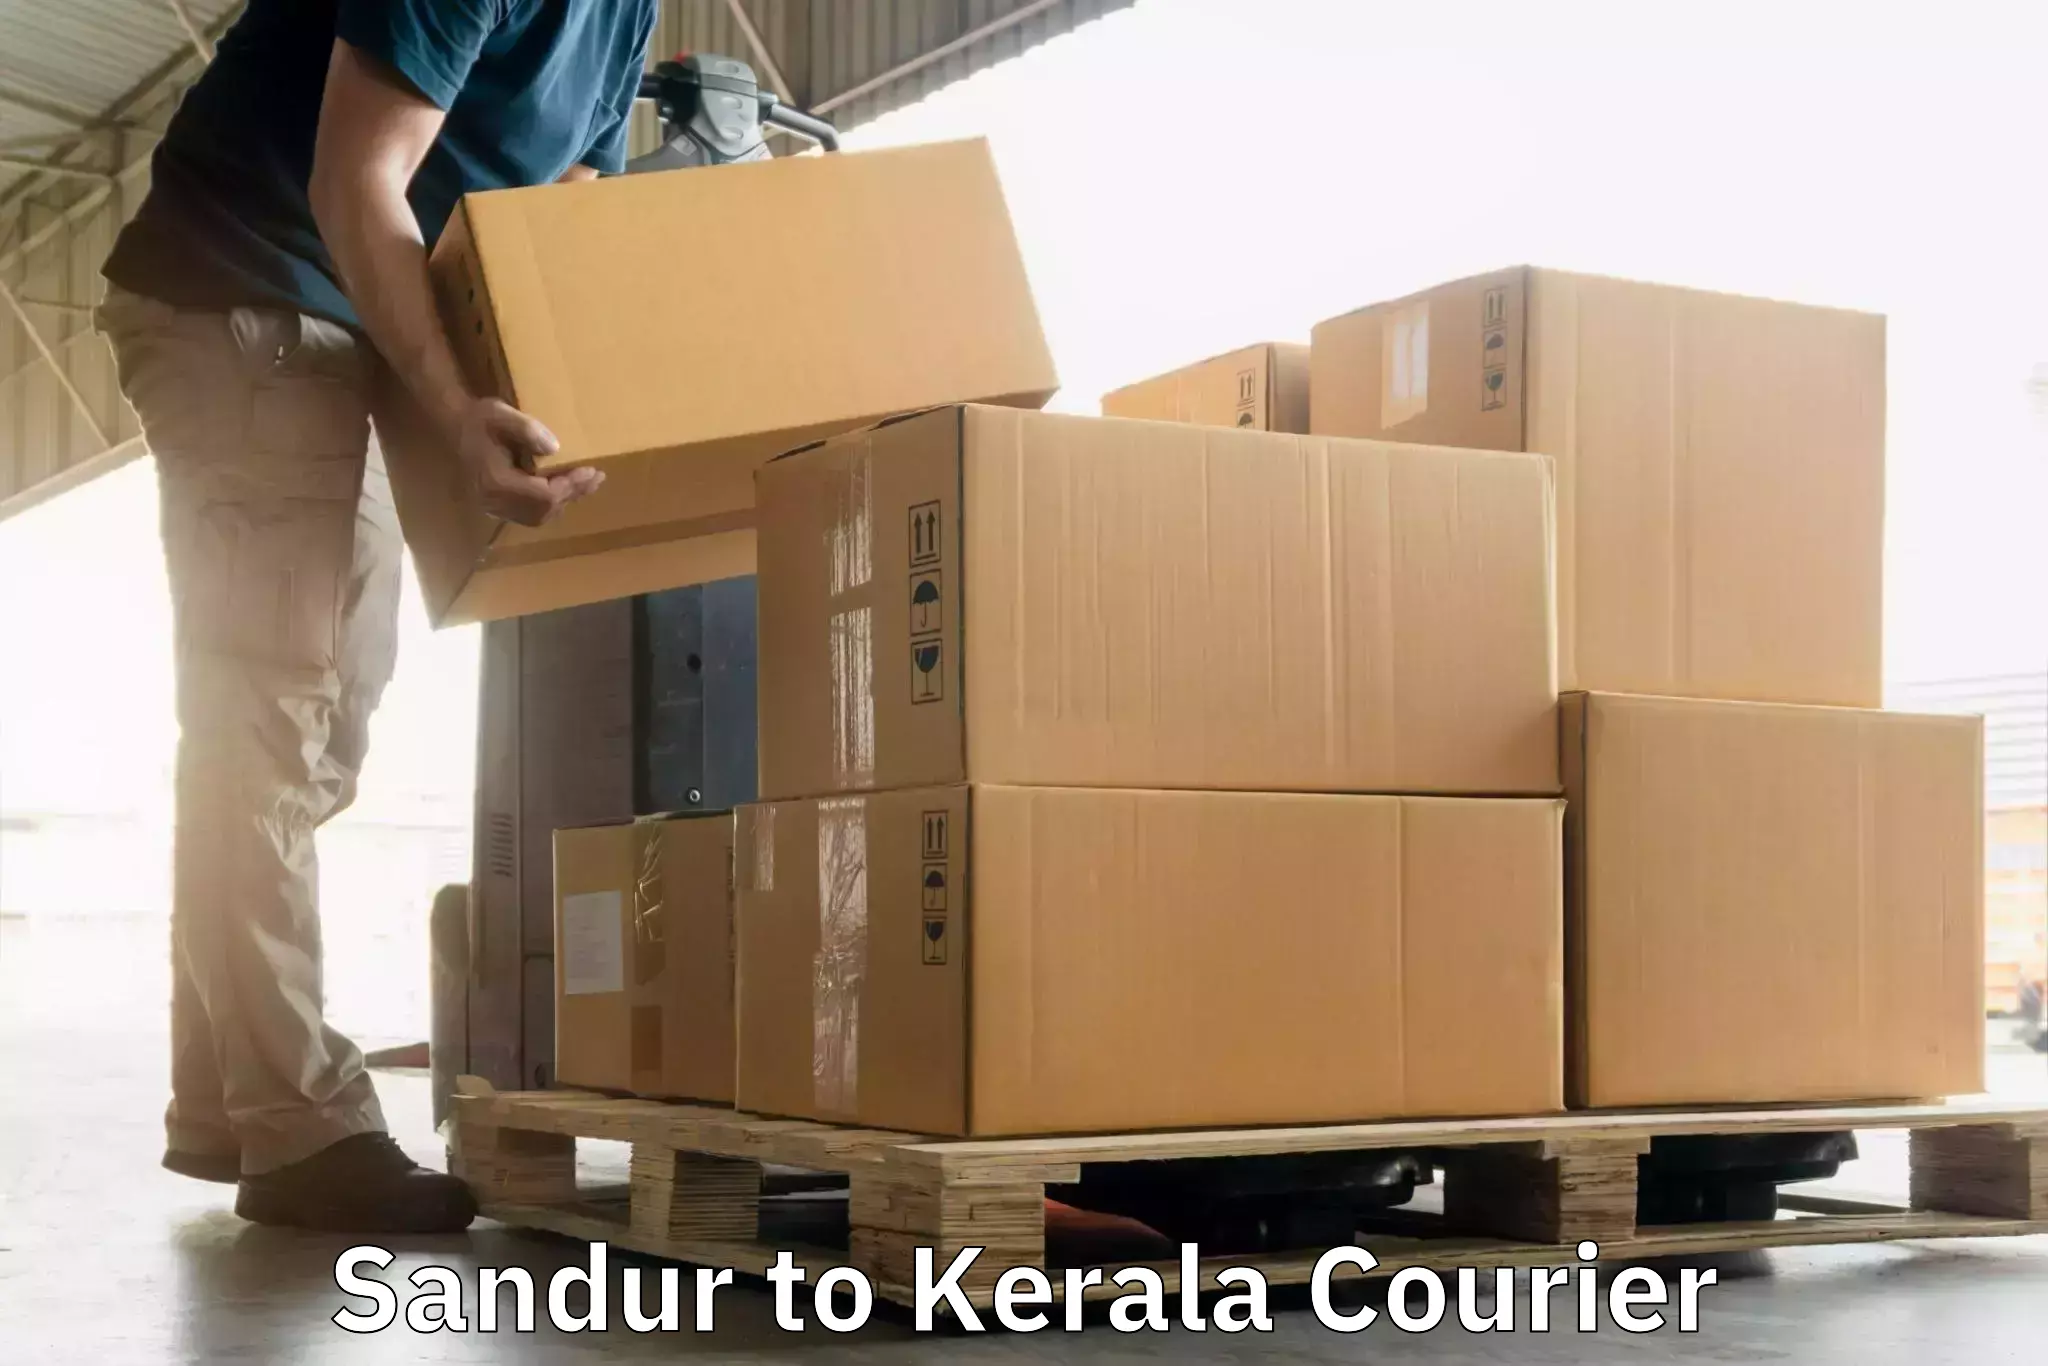 Express courier facilities Sandur to Kerala